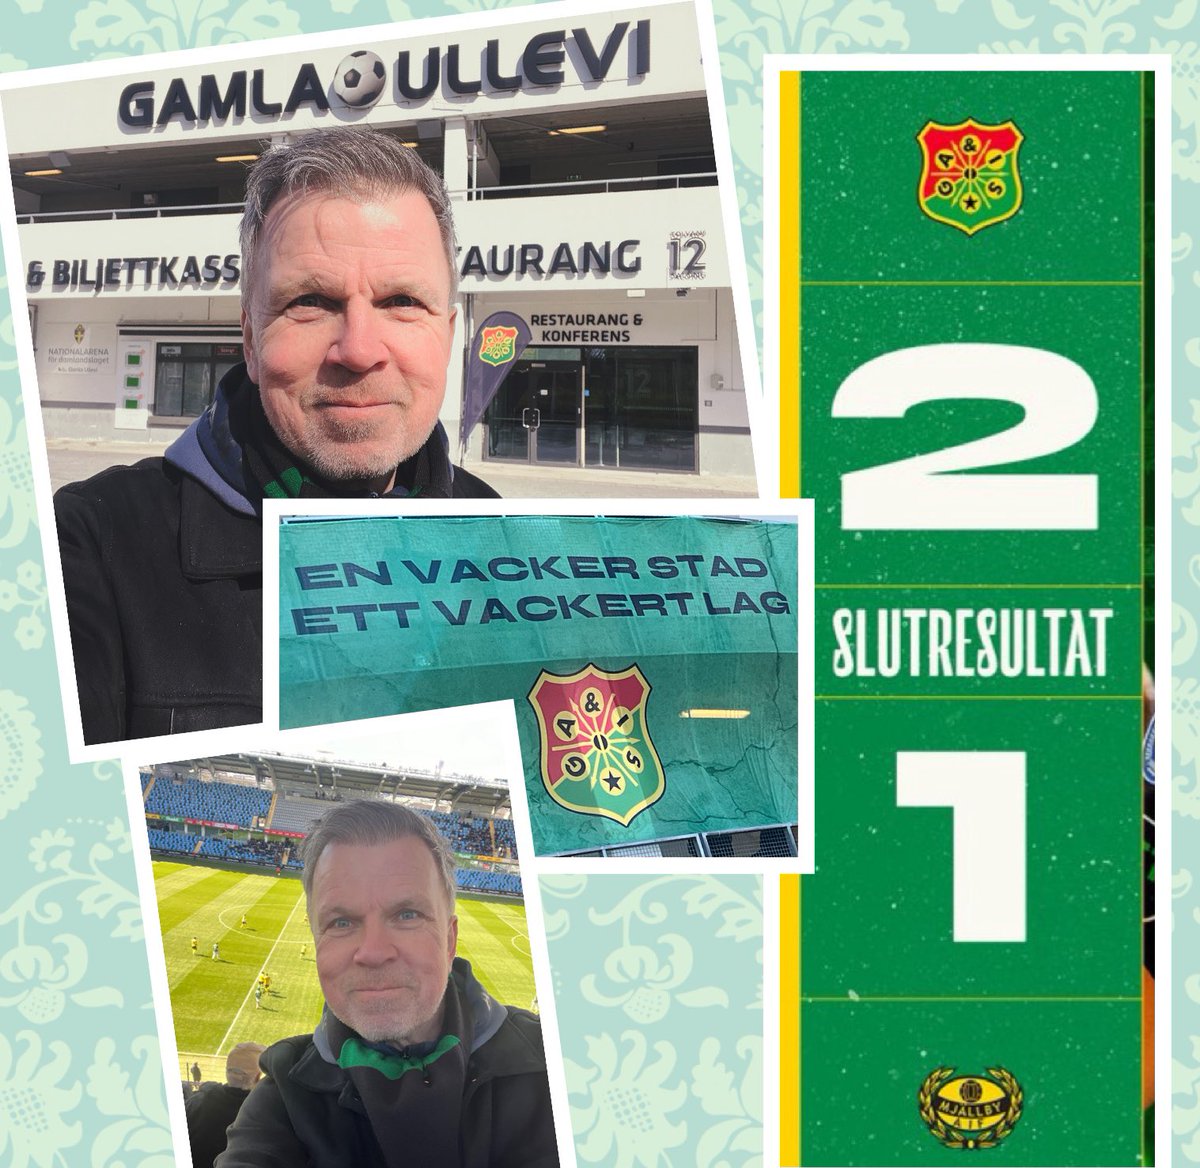 Mer nostalgikänslor denna helg. I Göteborg en kort sväng och tar chansen att gå på Gamla Ullevi där jag som pojklagsspelare började spela fotboll i Gais och hade omklädningsrum på ”gamla” Gamla Ullevi. Idag seger mot Mjällby och viktiga tre poäng. @GAIS_SE